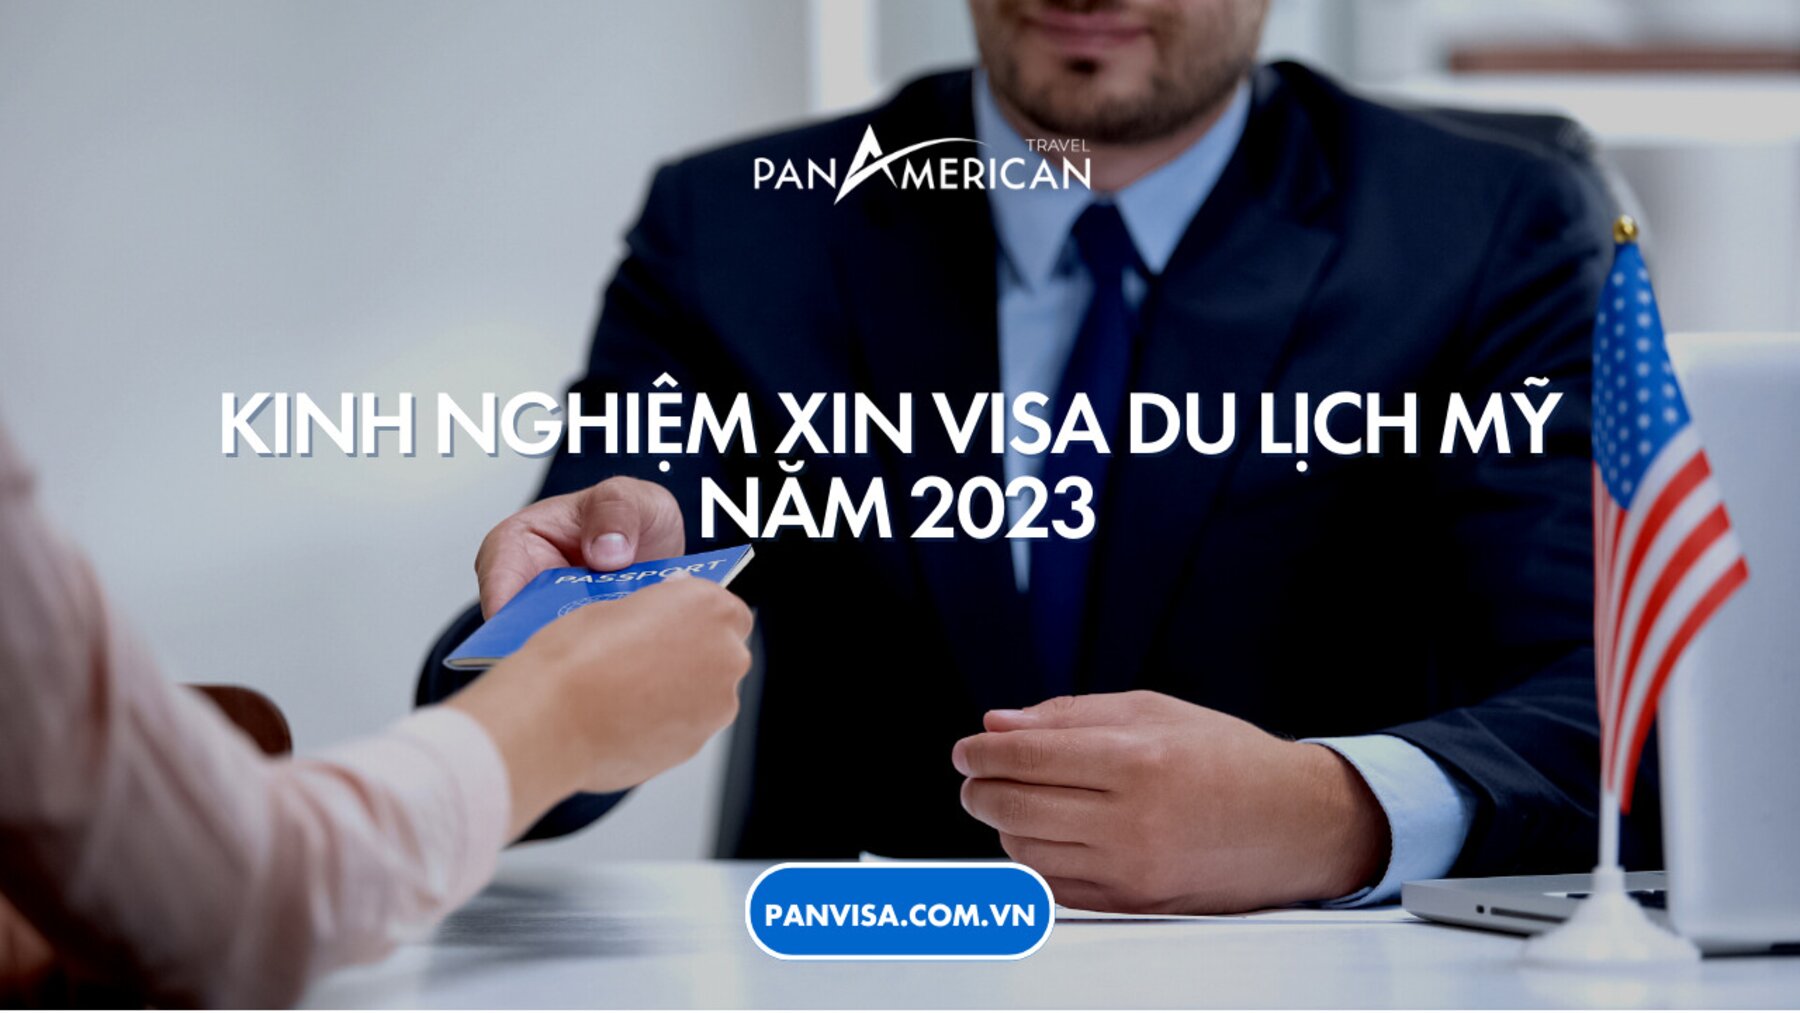 Kinh nghiệm xin visa du lịch Mỹ năm 2023 chắc chắn đậu tại PANVISA